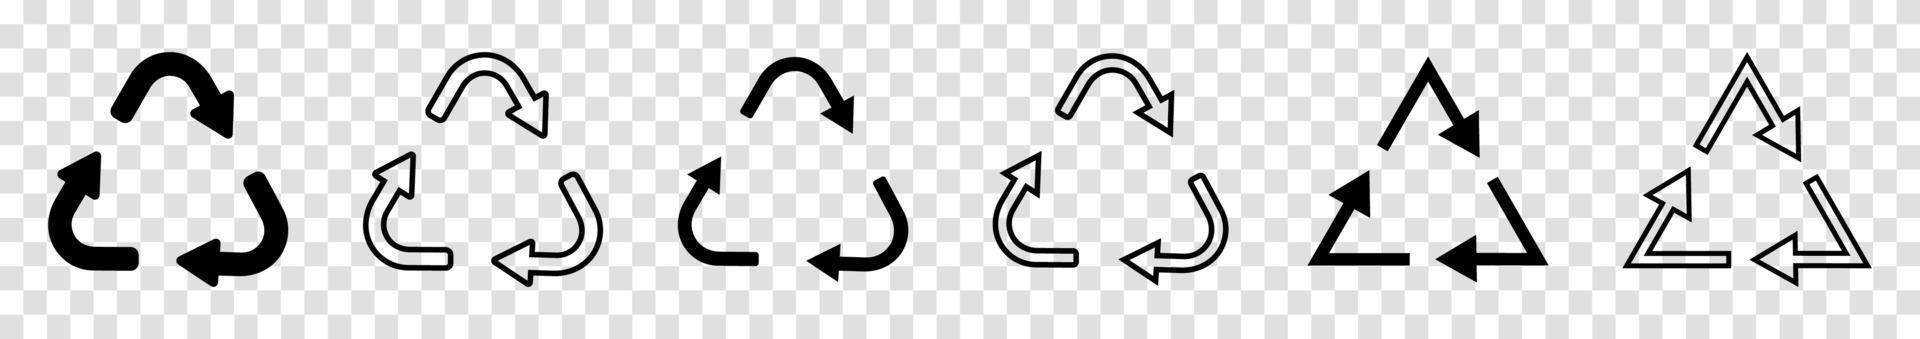 conjunto de ícones de reciclagem. reciclar o ícone do símbolo. reciclar ícones vetoriais pretos seguidos. ilustração vetorial vetor